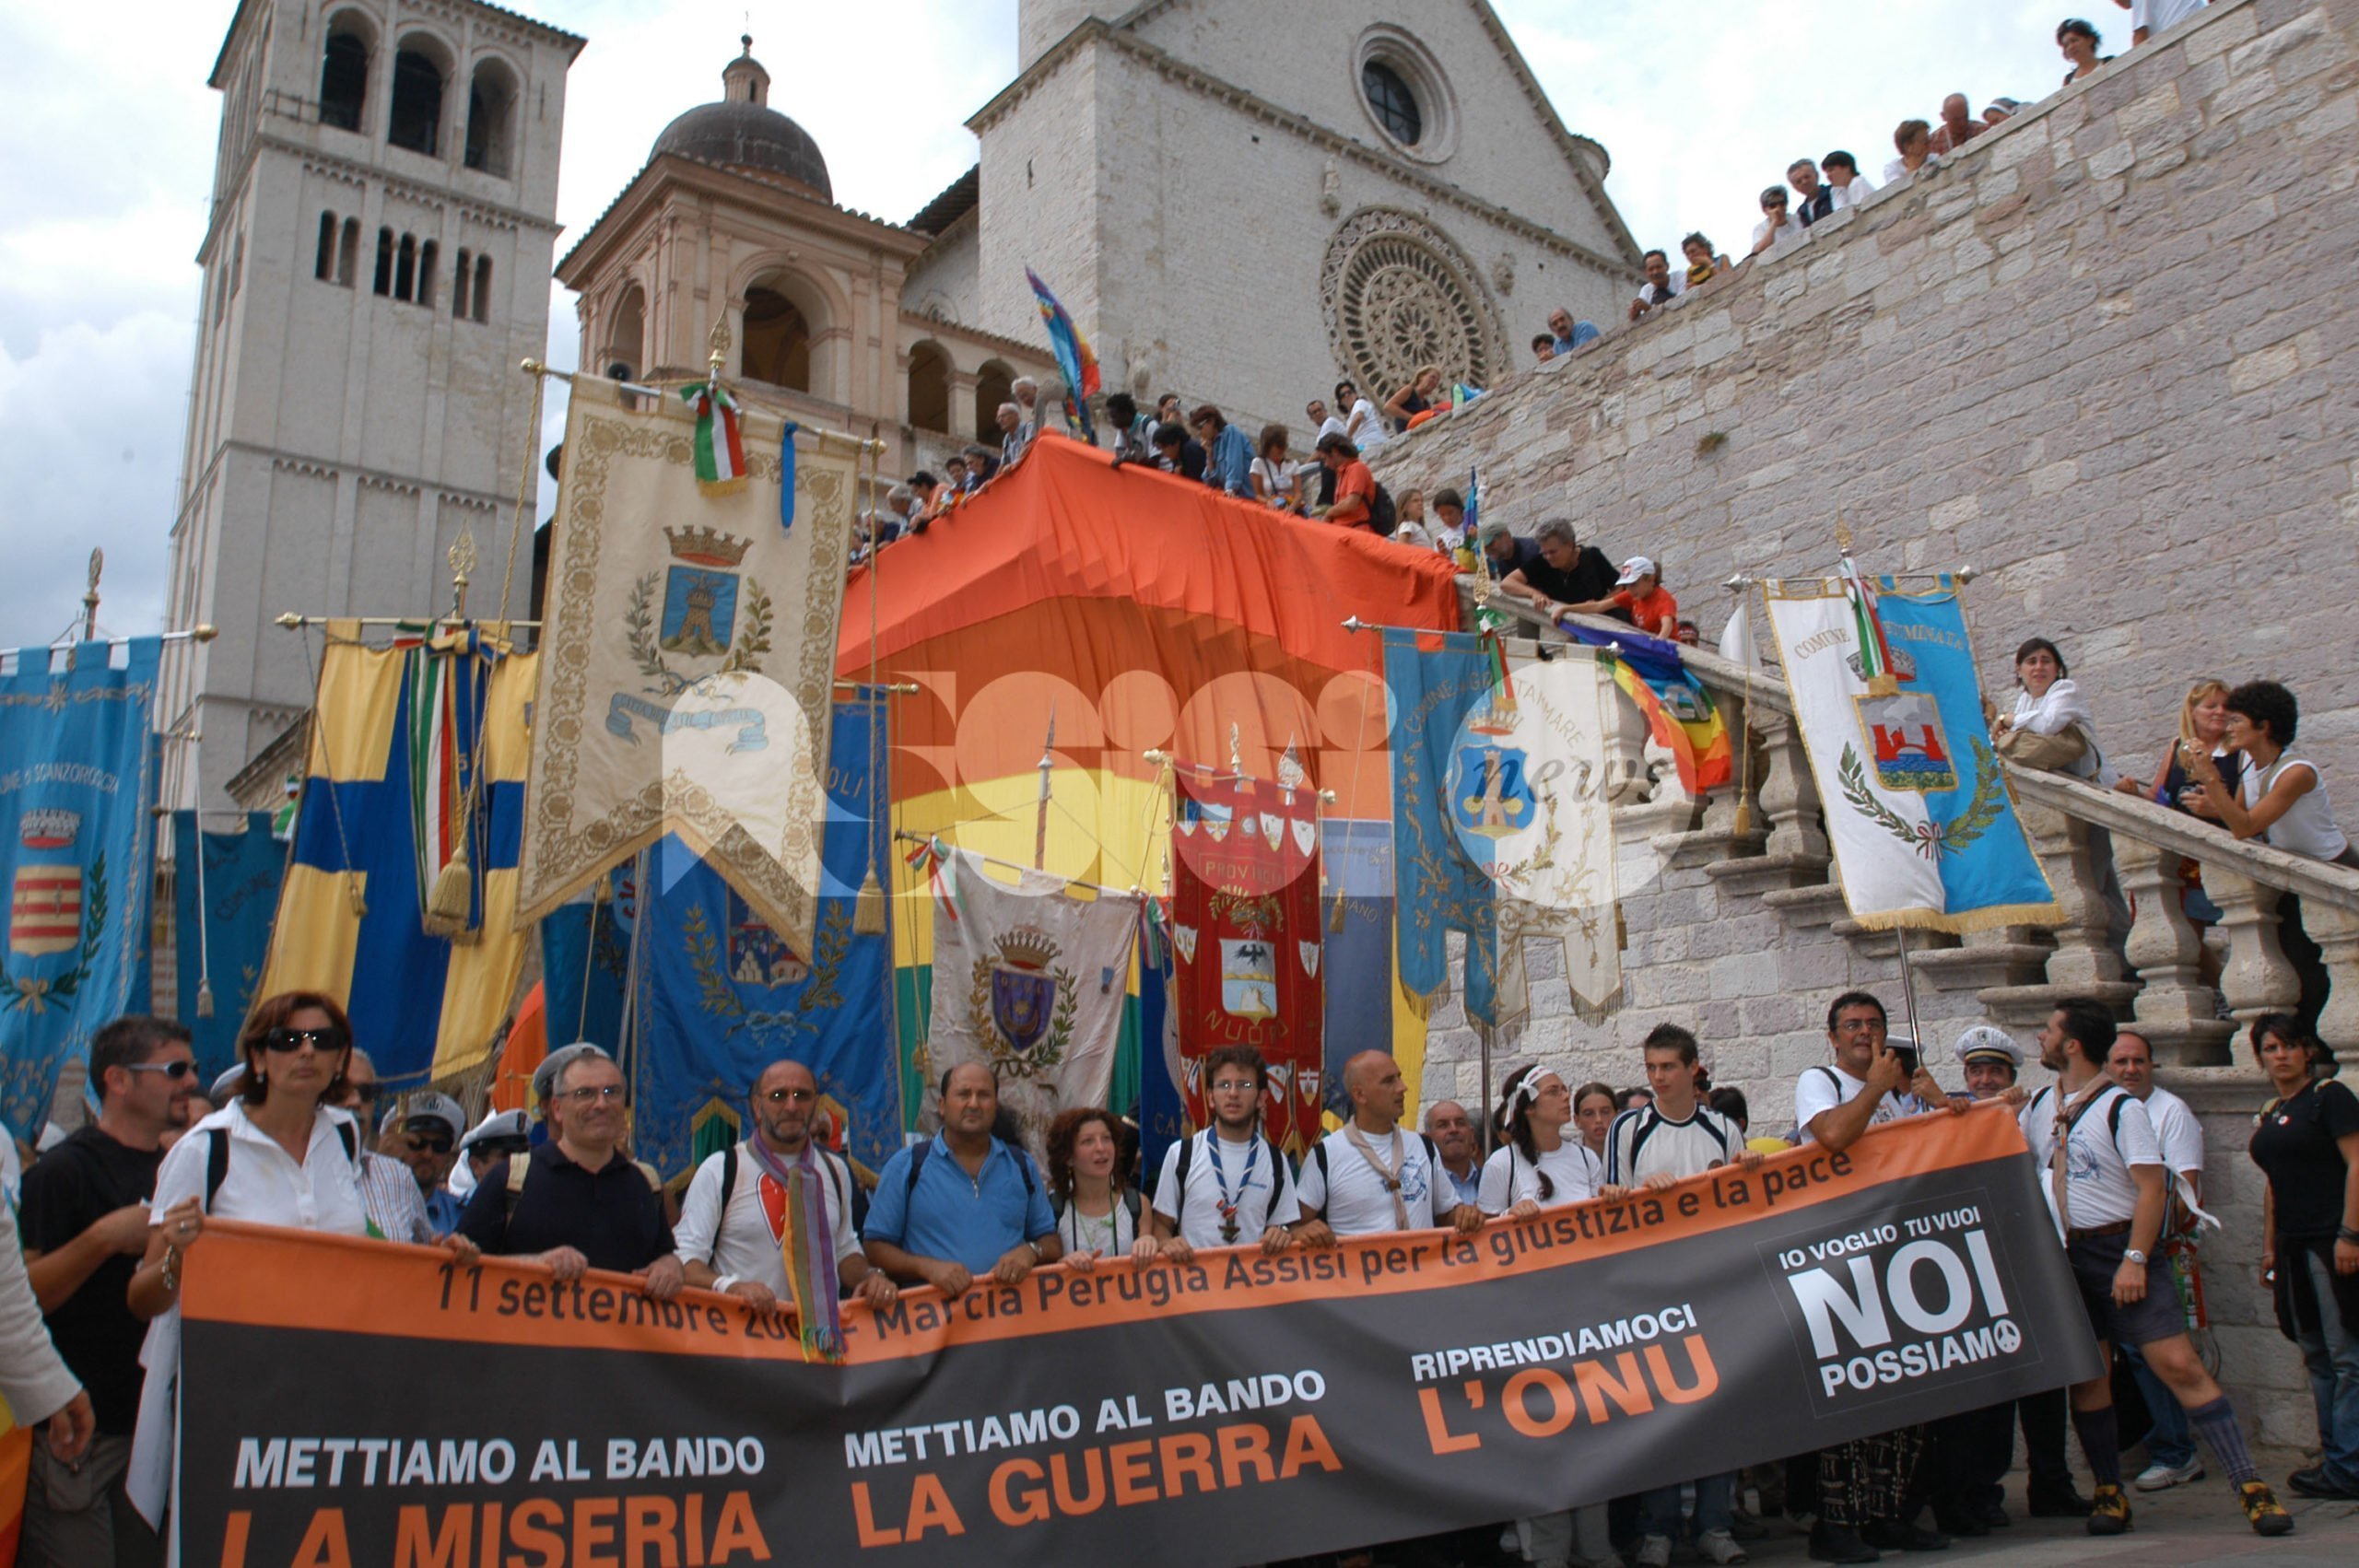 La Marcia della Pace Perugia Assisi 2016 presentata a Roma